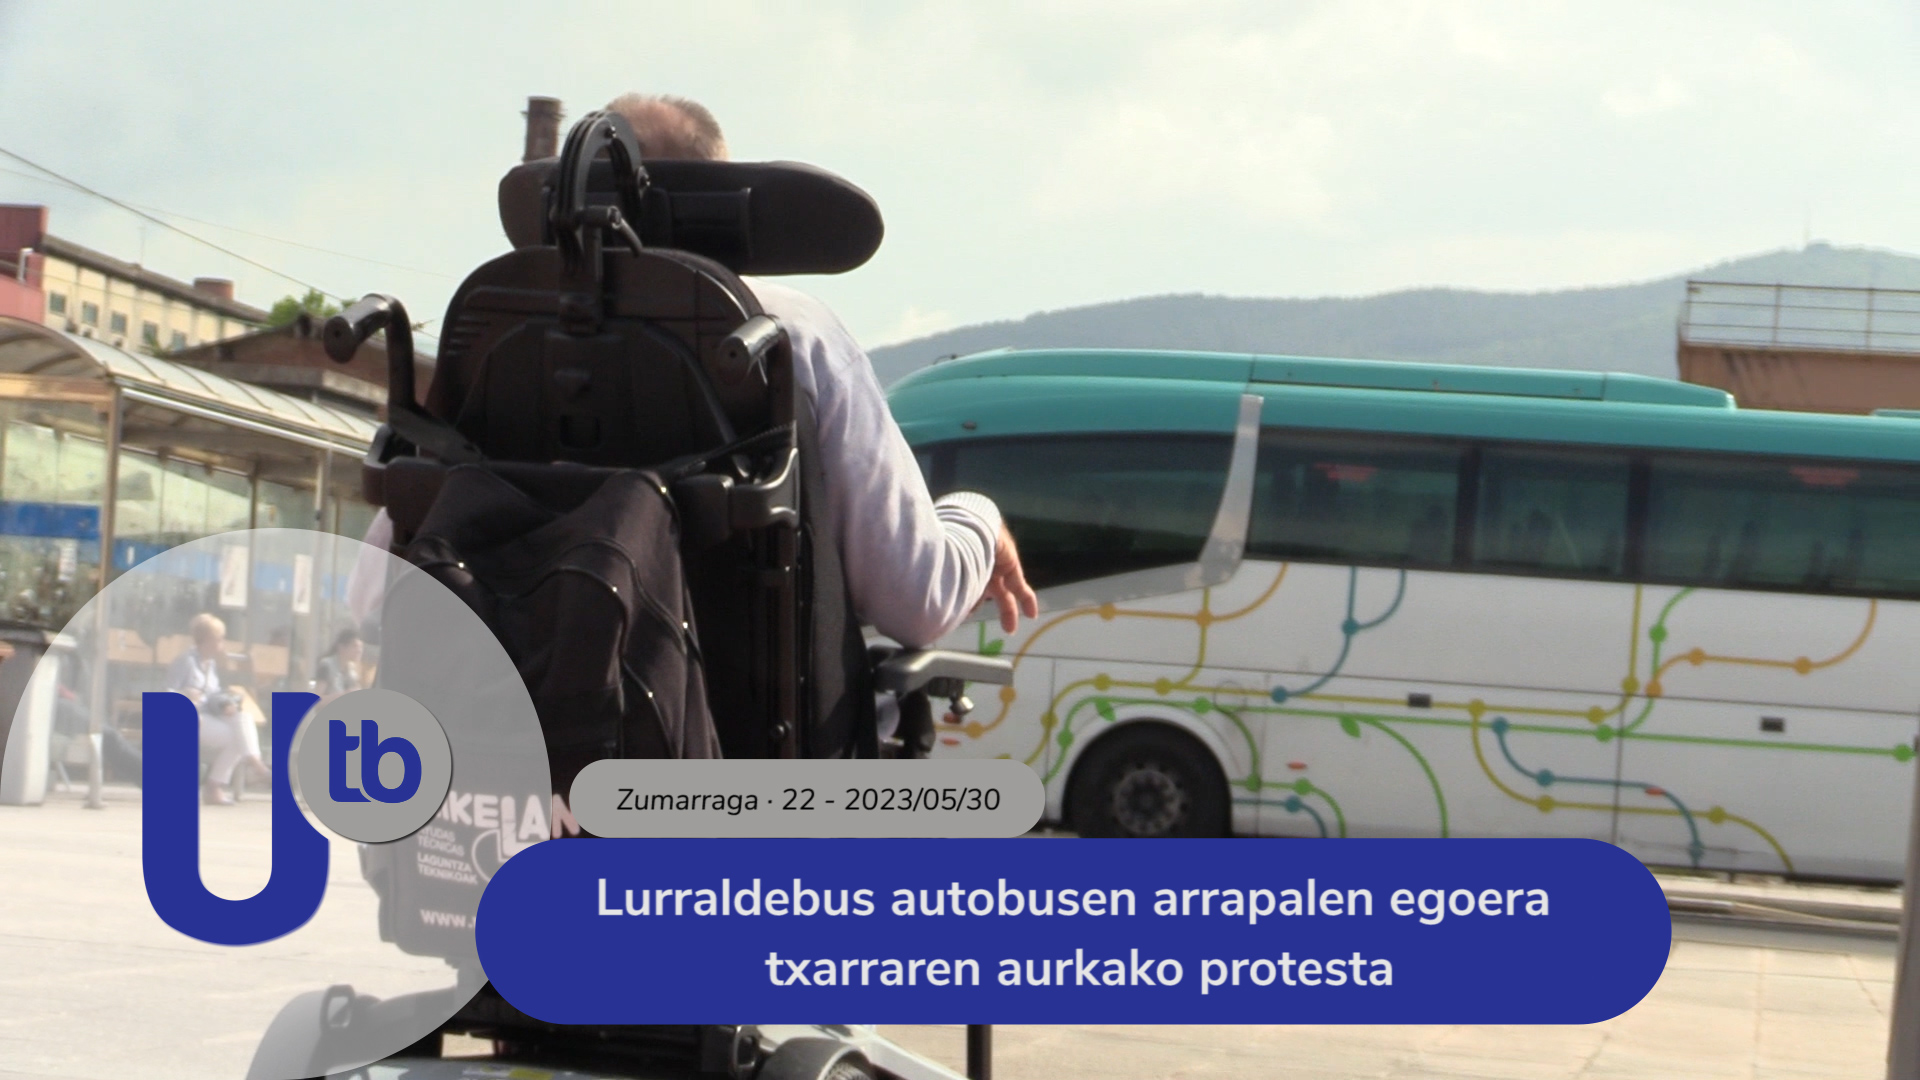 Protesta contra el mal estado de las rampas de los autobuses lurraldebus / Lurraldebus autobusen arrapalen egoera txarraren aurkako protesta